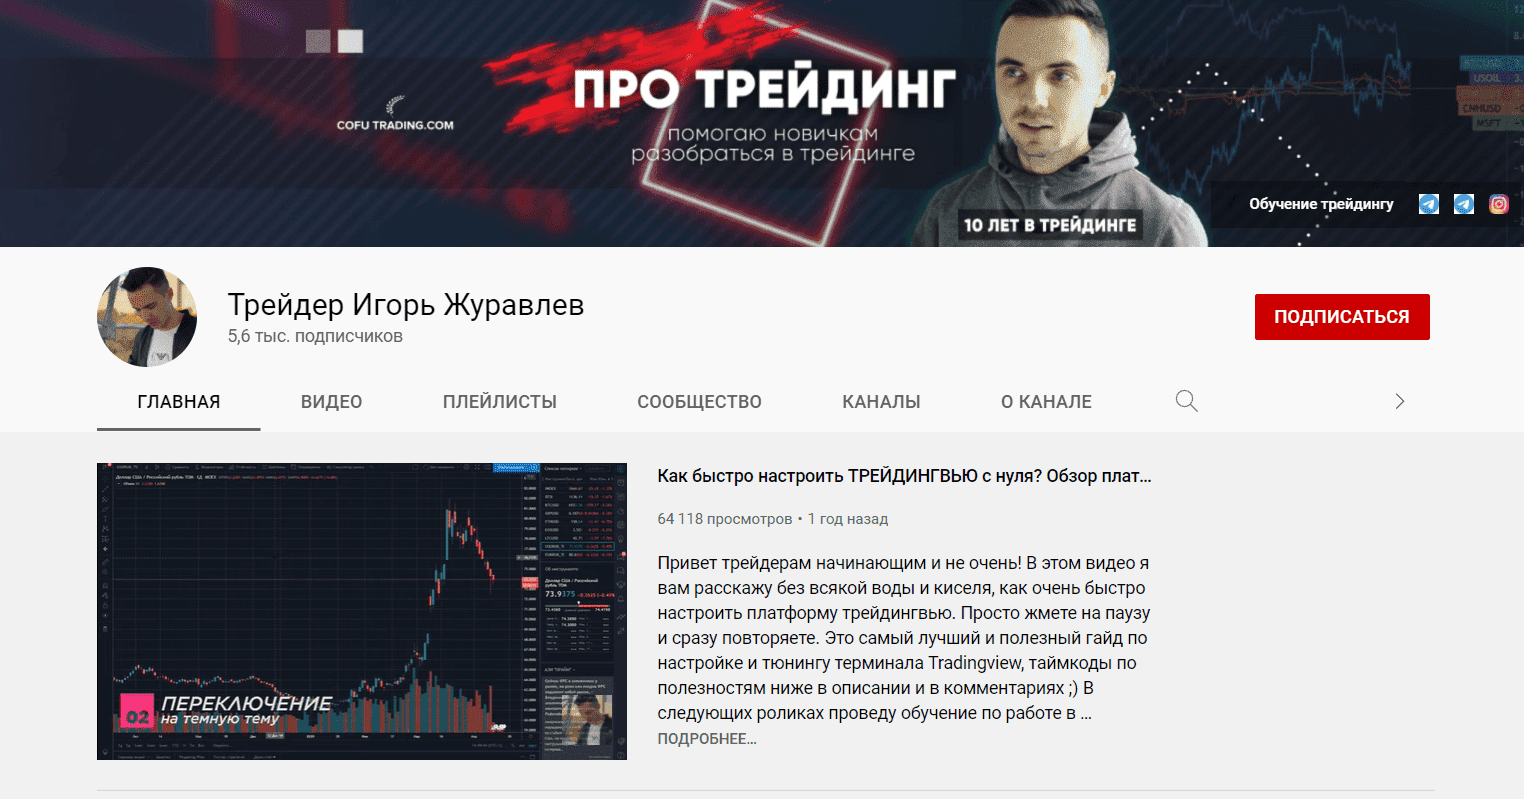 Ютуб-канал трейдера Игоря Журавлева